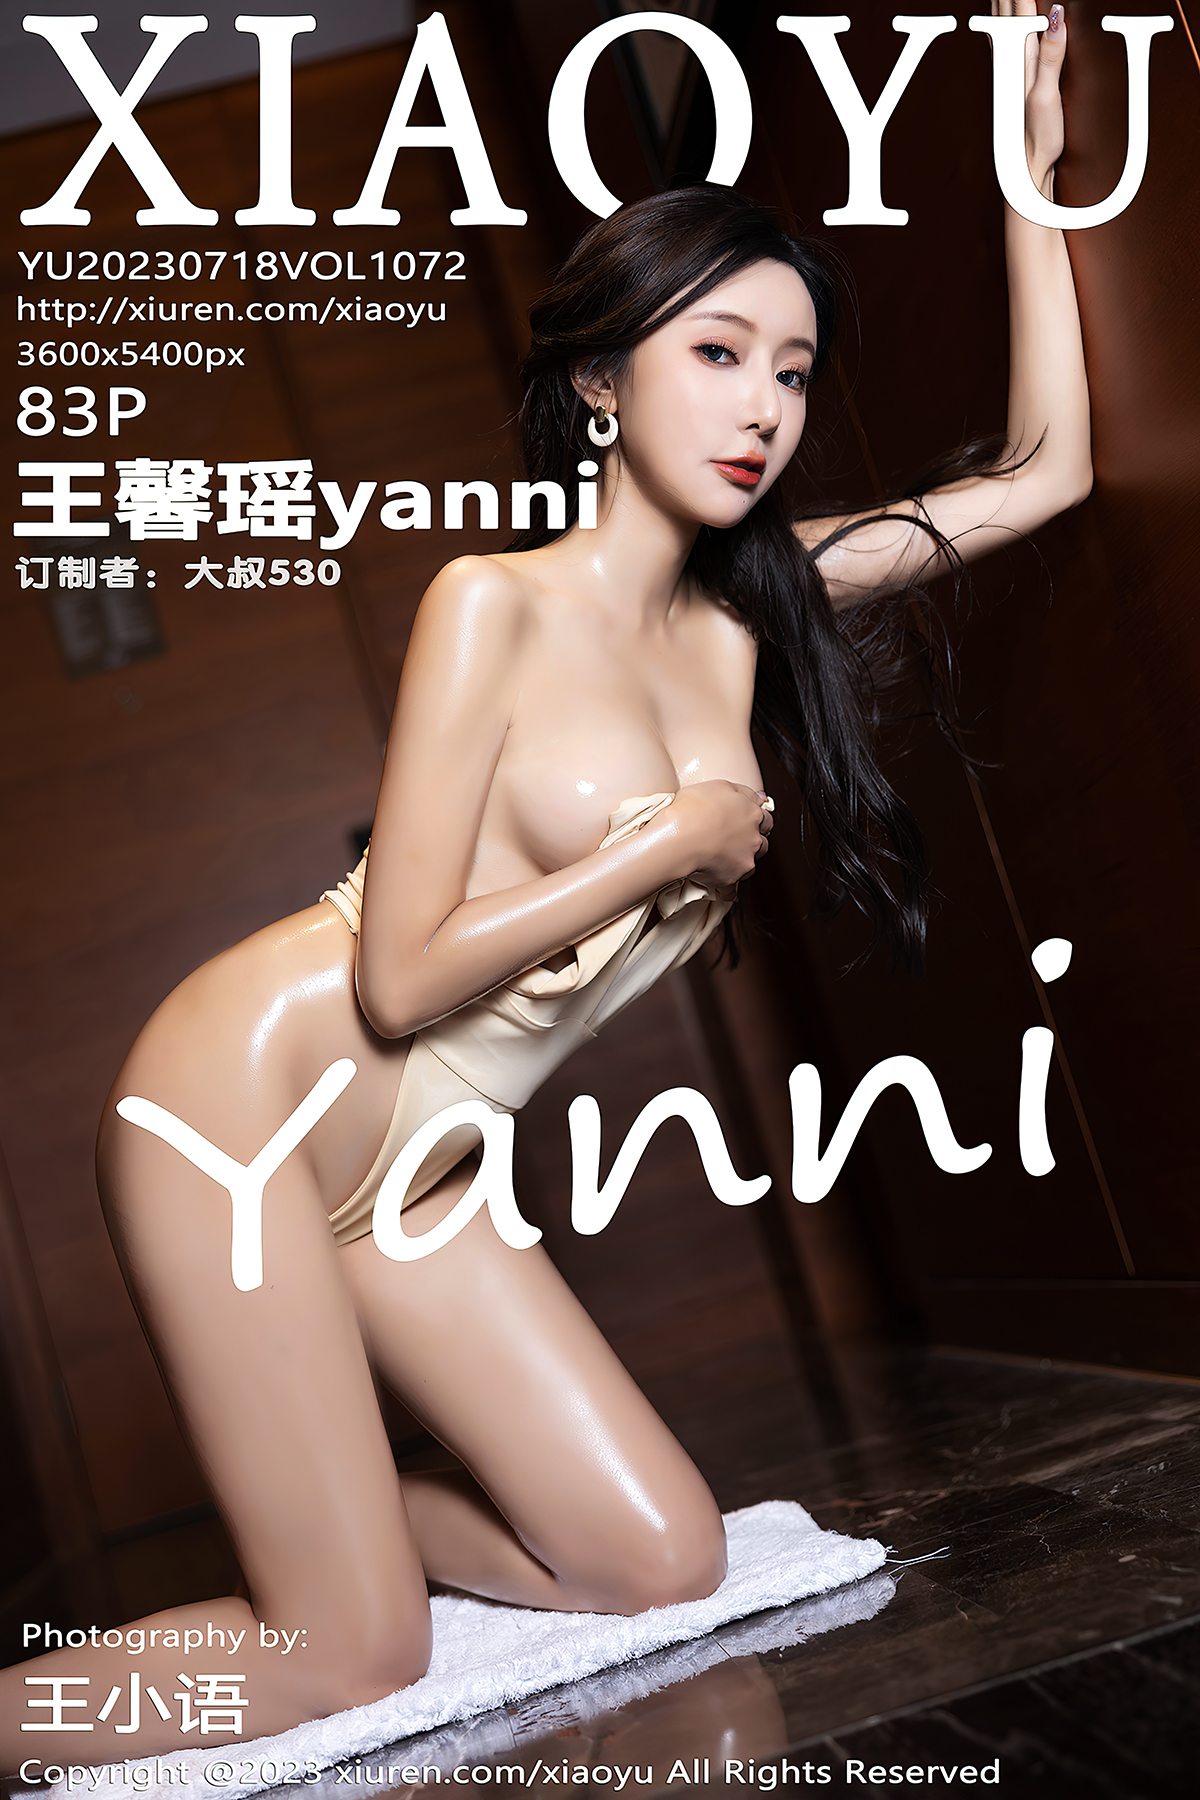 XiaoYu语画界 Vol.1072 Wang Xin Yao Yanni